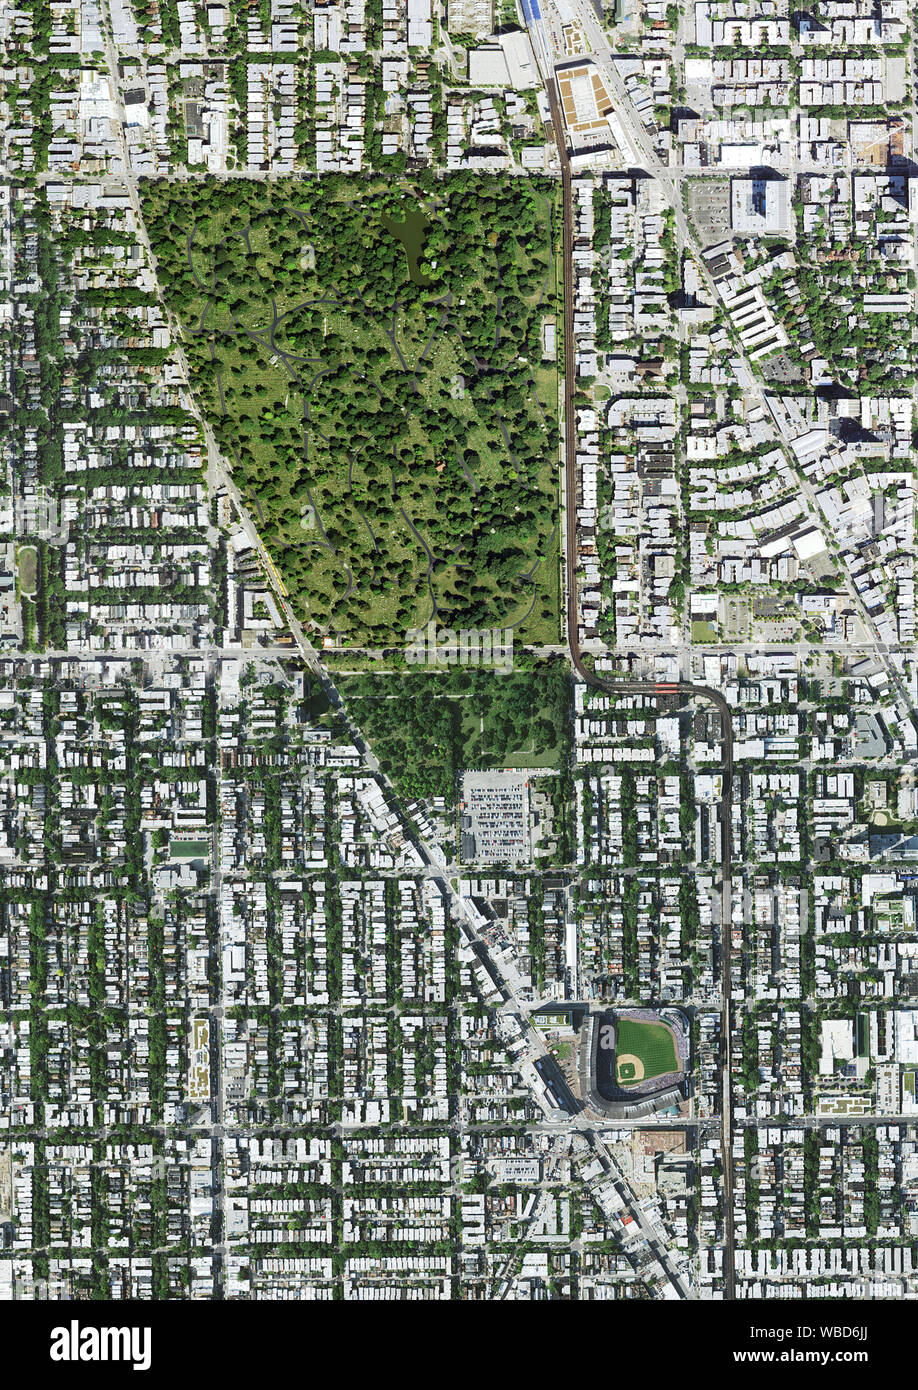 La fotografia aerea di Wrigley Field e il cimitero di Graceland, Chicago, Illinois, Stati Uniti d'America. Immagine raccolta il 3 settembre 2017. Foto Stock